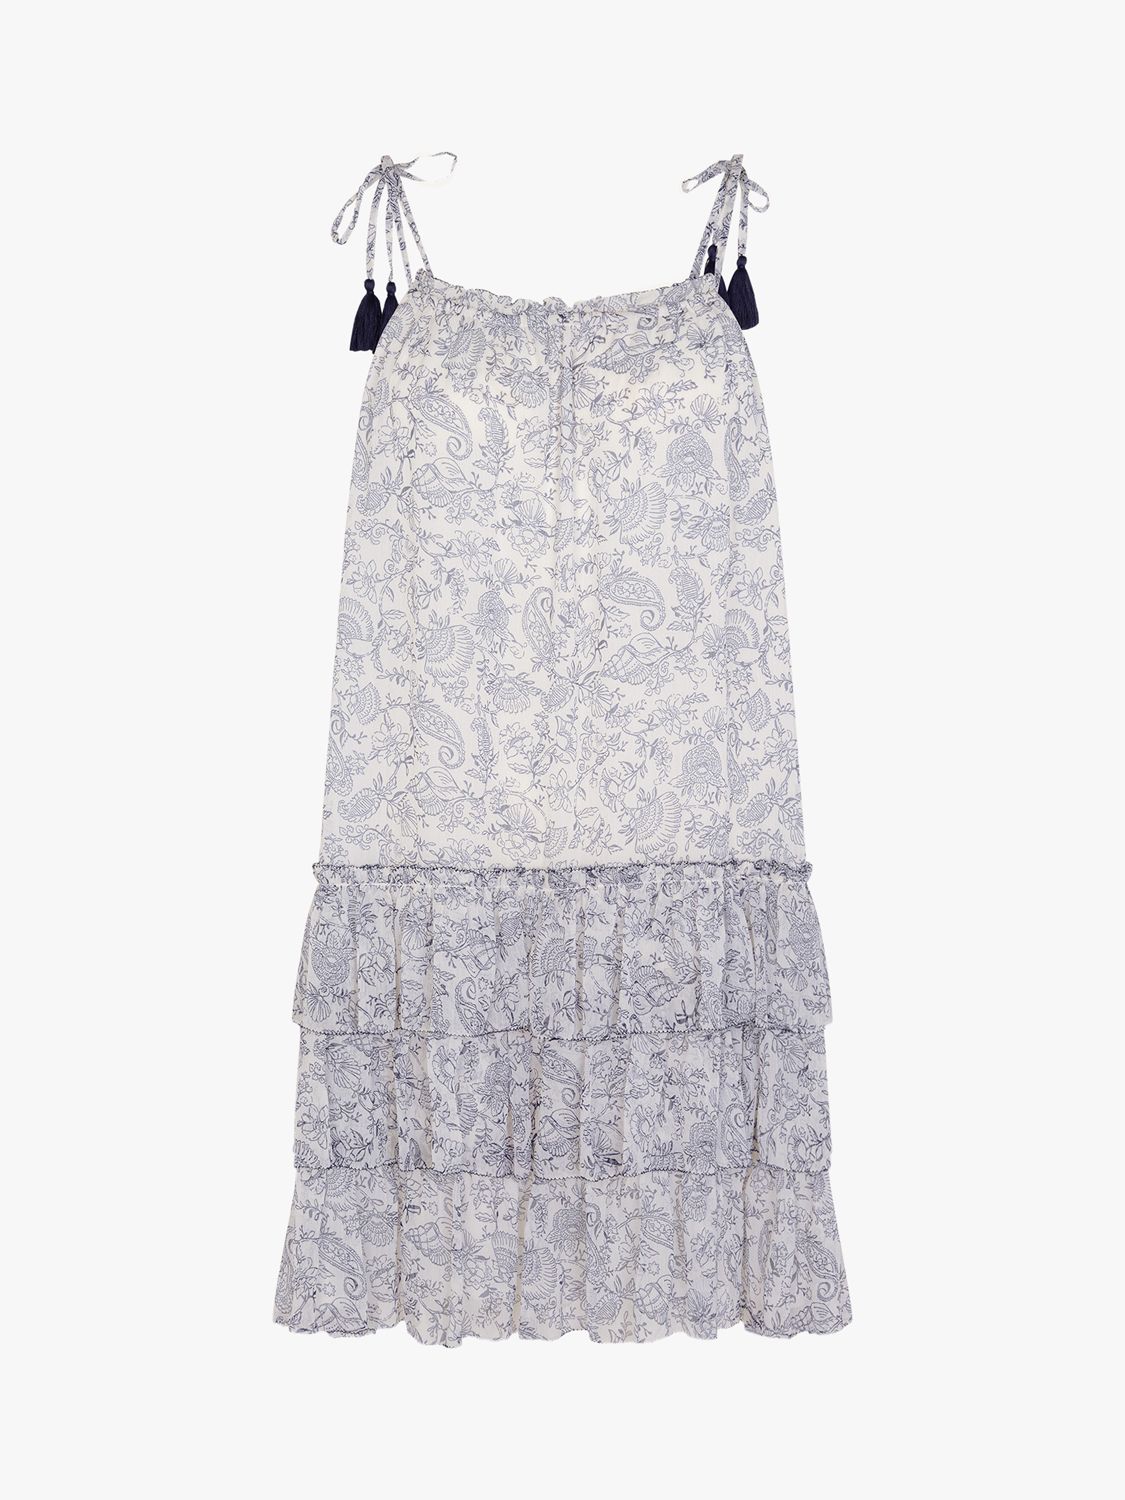 Accessorize Strappy Tiered Mini Dress, White/Multi, XXL